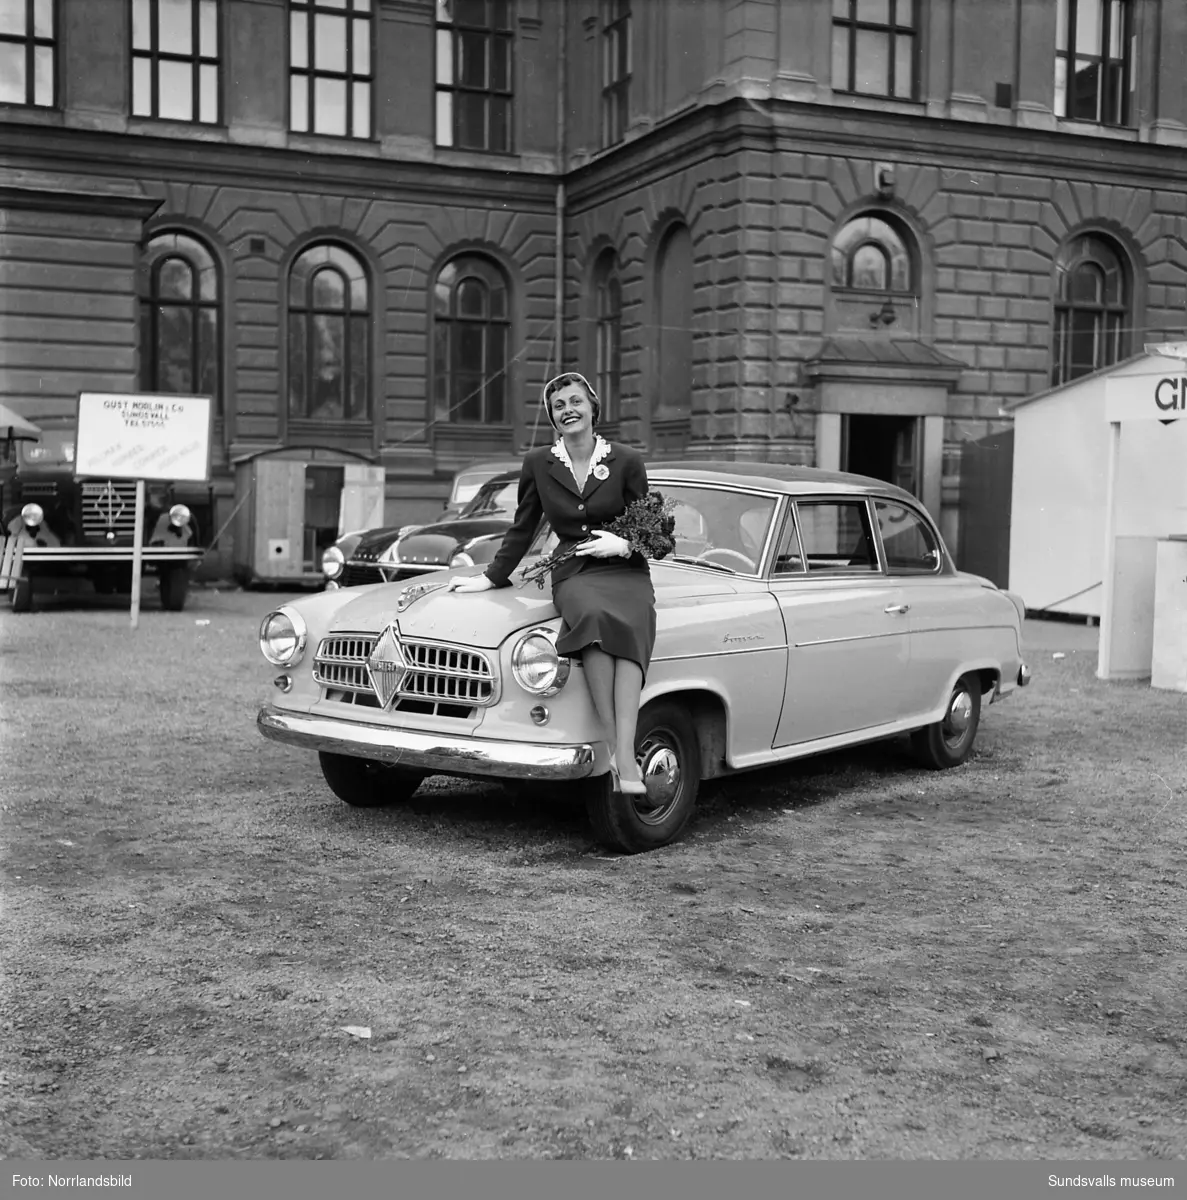 G Norlin & Co, bilfirma som ställer ut på Sundsvallsutställningen 1954. Bland annat visas det tyska bilmärket Borgward.